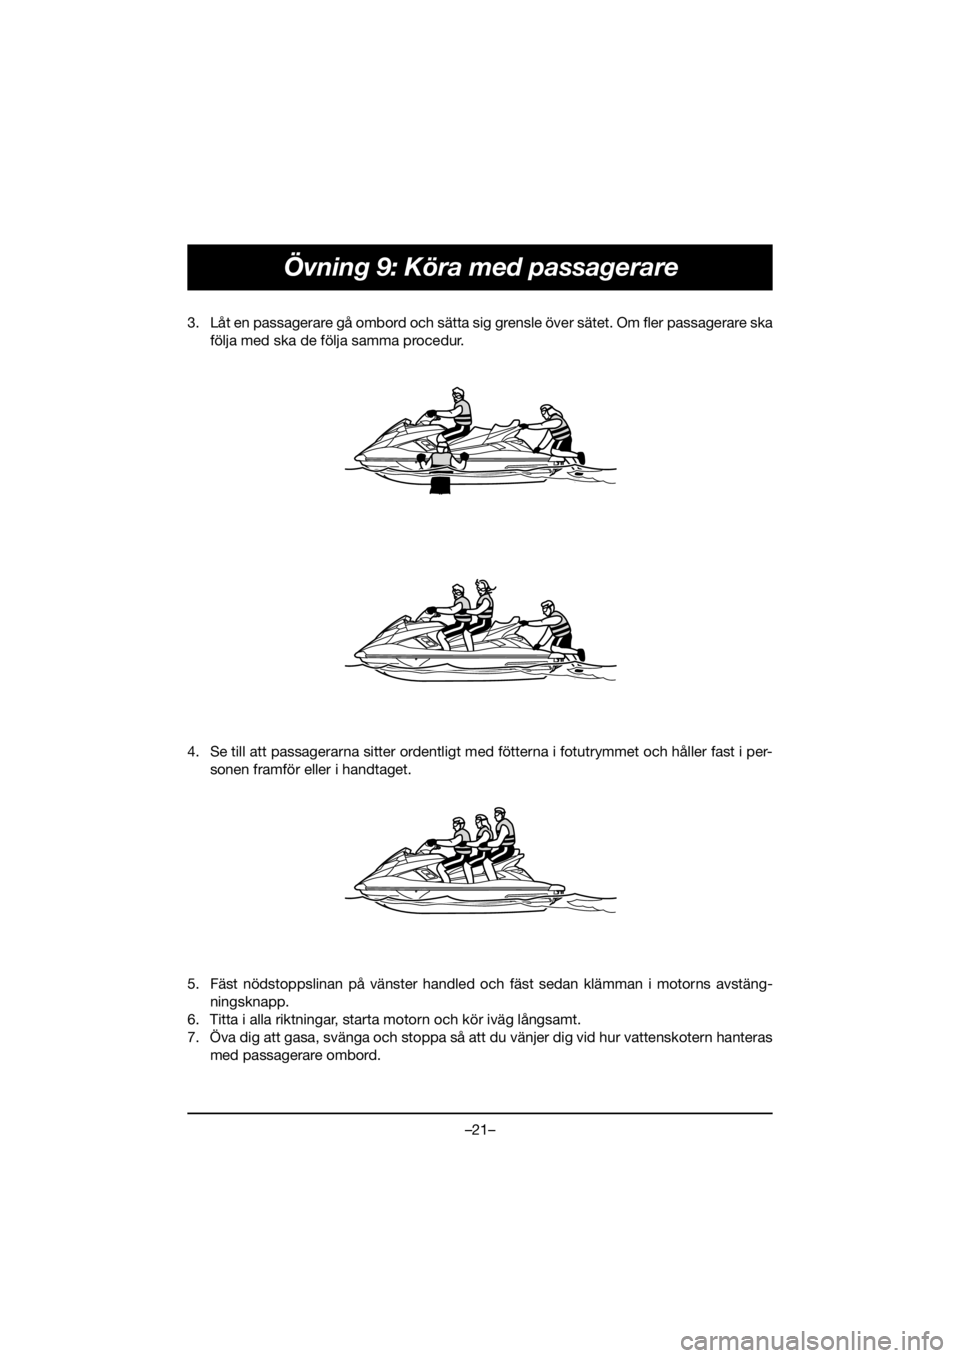 YAMAHA FX HO 2019  Manuale de Empleo (in Spanish) –21–
Övning 9: Köra med passagerare
3. Låt en passagerare gå ombord och sätta sig grensle över sätet. Om fler passagerare ska
följa med ska de följa samma procedur. 
4. Se till att passag